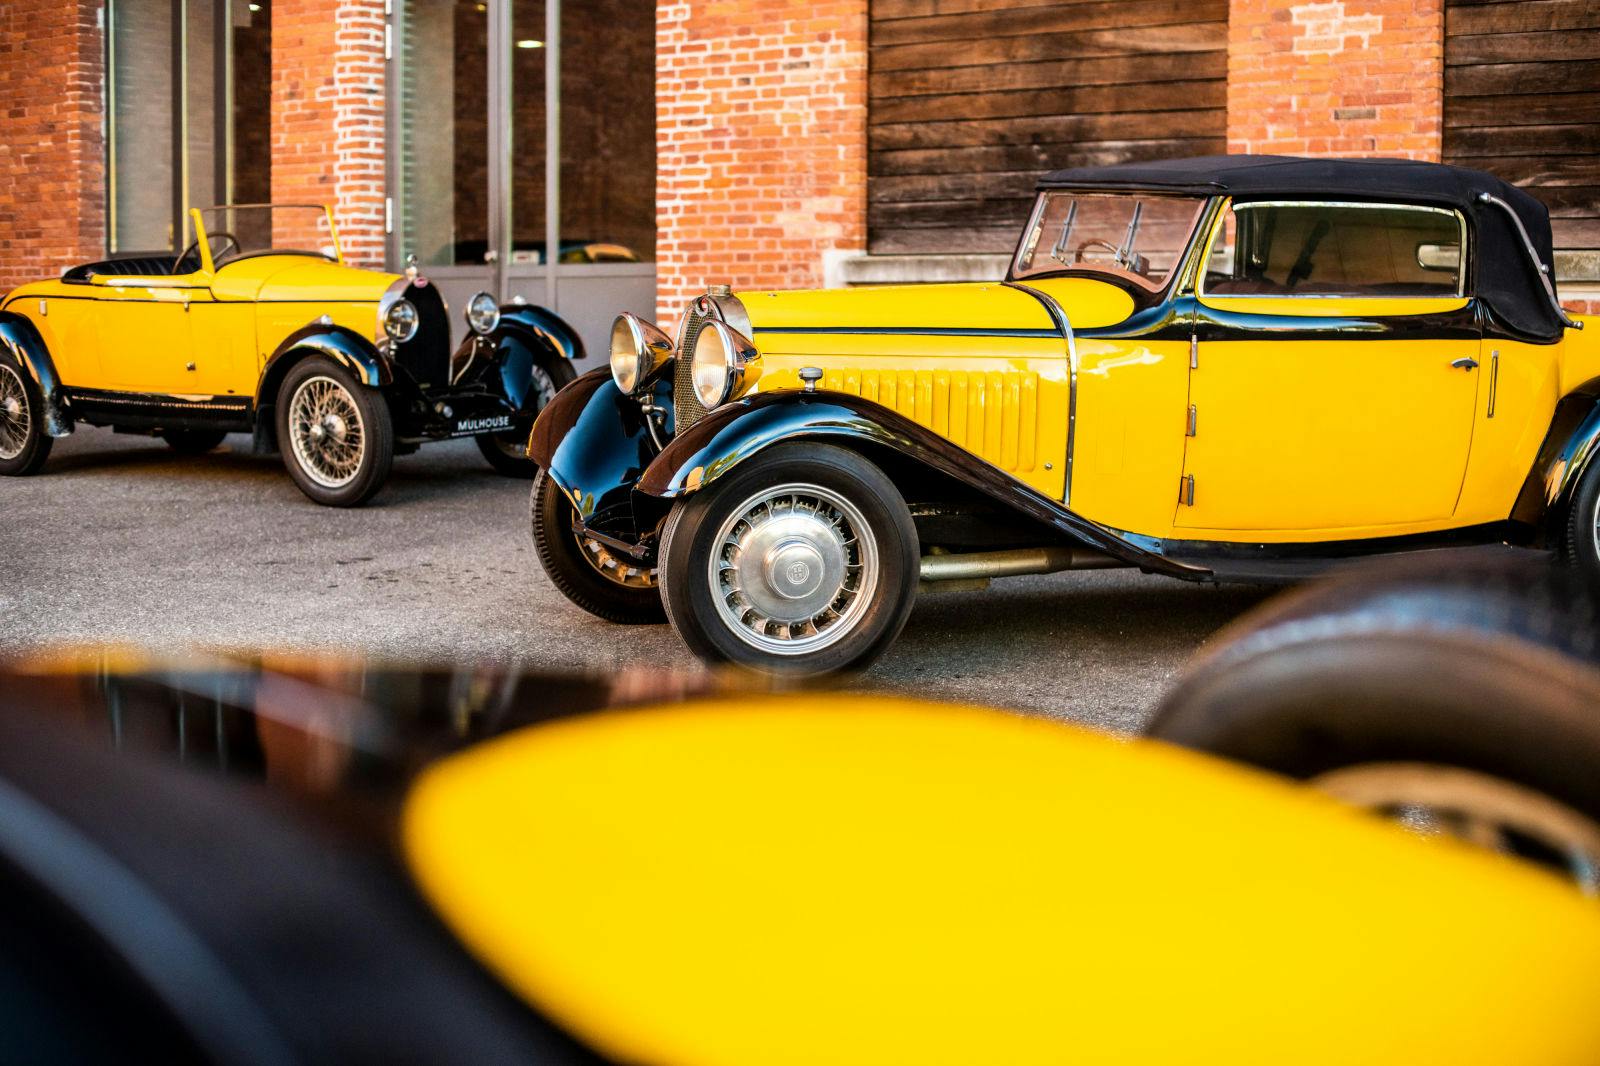 The favorite color combination of Ettore Bugatti: black and yellow.